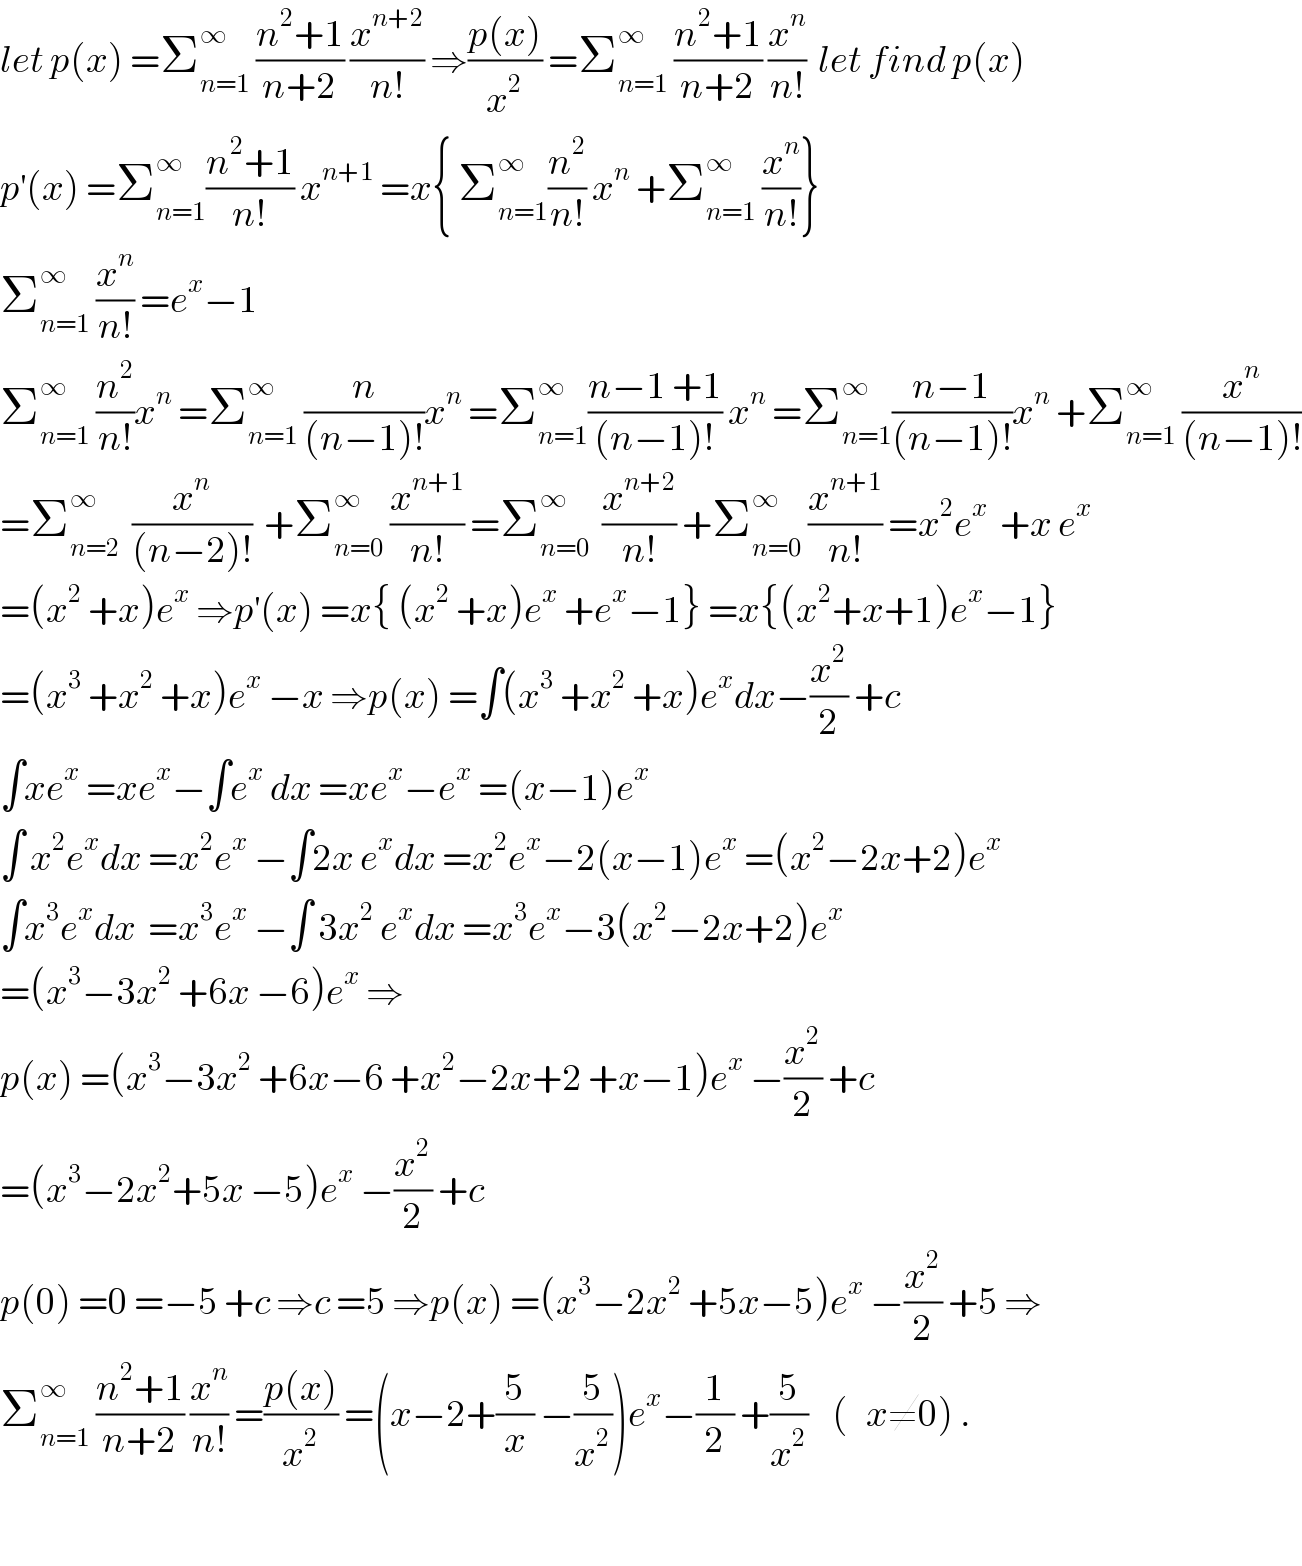 let p(x) =Σ_(n=1) ^∞  ((n^2 +1)/(n+2)) (x^(n+2) /(n!)) ⇒((p(x))/x^2 ) =Σ_(n=1) ^∞  ((n^2 +1)/(n+2)) (x^n /(n!))  let find p(x)  p^′ (x) =Σ_(n=1) ^∞ ((n^2 +1)/(n!)) x^(n+1)  =x{ Σ_(n=1) ^∞ (n^2 /(n!)) x^n  +Σ_(n=1) ^∞  (x^n /(n!))}  Σ_(n=1) ^∞  (x^n /(n!)) =e^x −1  Σ_(n=1) ^∞  (n^2 /(n!))x^n  =Σ_(n=1) ^∞  (n/((n−1)!))x^n  =Σ_(n=1) ^∞ ((n−1 +1)/((n−1)!)) x^n  =Σ_(n=1) ^∞ ((n−1)/((n−1)!))x^n  +Σ_(n=1) ^∞  (x^n /((n−1)!))  =Σ_(n=2) ^∞   (x^n /((n−2)!))  +Σ_(n=0) ^∞  (x^(n+1) /(n!)) =Σ_(n=0) ^∞   (x^(n+2) /(n!)) +Σ_(n=0) ^∞  (x^(n+1) /(n!)) =x^2 e^x   +x e^x   =(x^2  +x)e^x  ⇒p^′ (x) =x{ (x^2  +x)e^x  +e^x −1} =x{(x^2 +x+1)e^x −1}  =(x^3  +x^2  +x)e^x  −x ⇒p(x) =∫(x^3  +x^2  +x)e^x dx−(x^2 /2) +c  ∫xe^x  =xe^x −∫e^x  dx =xe^x −e^x  =(x−1)e^x   ∫ x^2 e^x dx =x^2 e^x  −∫2x e^x dx =x^2 e^x −2(x−1)e^x  =(x^2 −2x+2)e^x   ∫x^3 e^x dx  =x^3 e^x  −∫ 3x^2  e^x dx =x^3 e^x −3(x^2 −2x+2)e^x   =(x^3 −3x^2  +6x −6)e^x  ⇒  p(x) =(x^3 −3x^2  +6x−6 +x^2 −2x+2 +x−1)e^x  −(x^2 /2) +c  =(x^3 −2x^2 +5x −5)e^x  −(x^2 /2) +c  p(0) =0 =−5 +c ⇒c =5 ⇒p(x) =(x^3 −2x^2  +5x−5)e^x  −(x^2 /2) +5 ⇒  Σ_(n=1) ^∞  ((n^2 +1)/(n+2)) (x^n /(n!)) =((p(x))/x^2 ) =(x−2+(5/x) −(5/x^2 ))e^x −(1/2) +(5/x^2 )    (   x≠0) .    